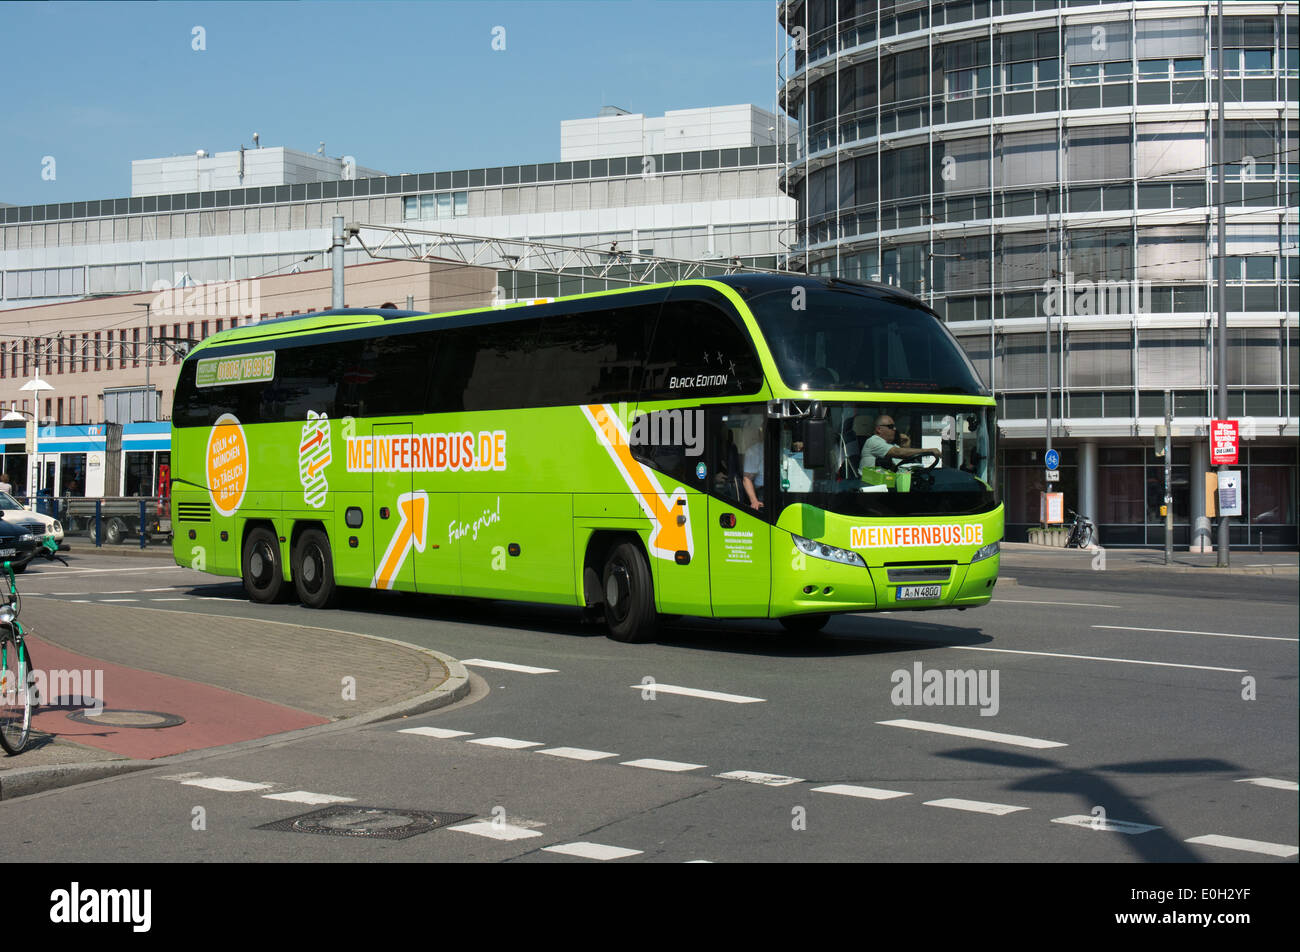 MeinFernbus.com è uno di un numero di chiamate interurbane a basso costo franchising di autobus che sono apparsi in Germania di recente. Foto Stock